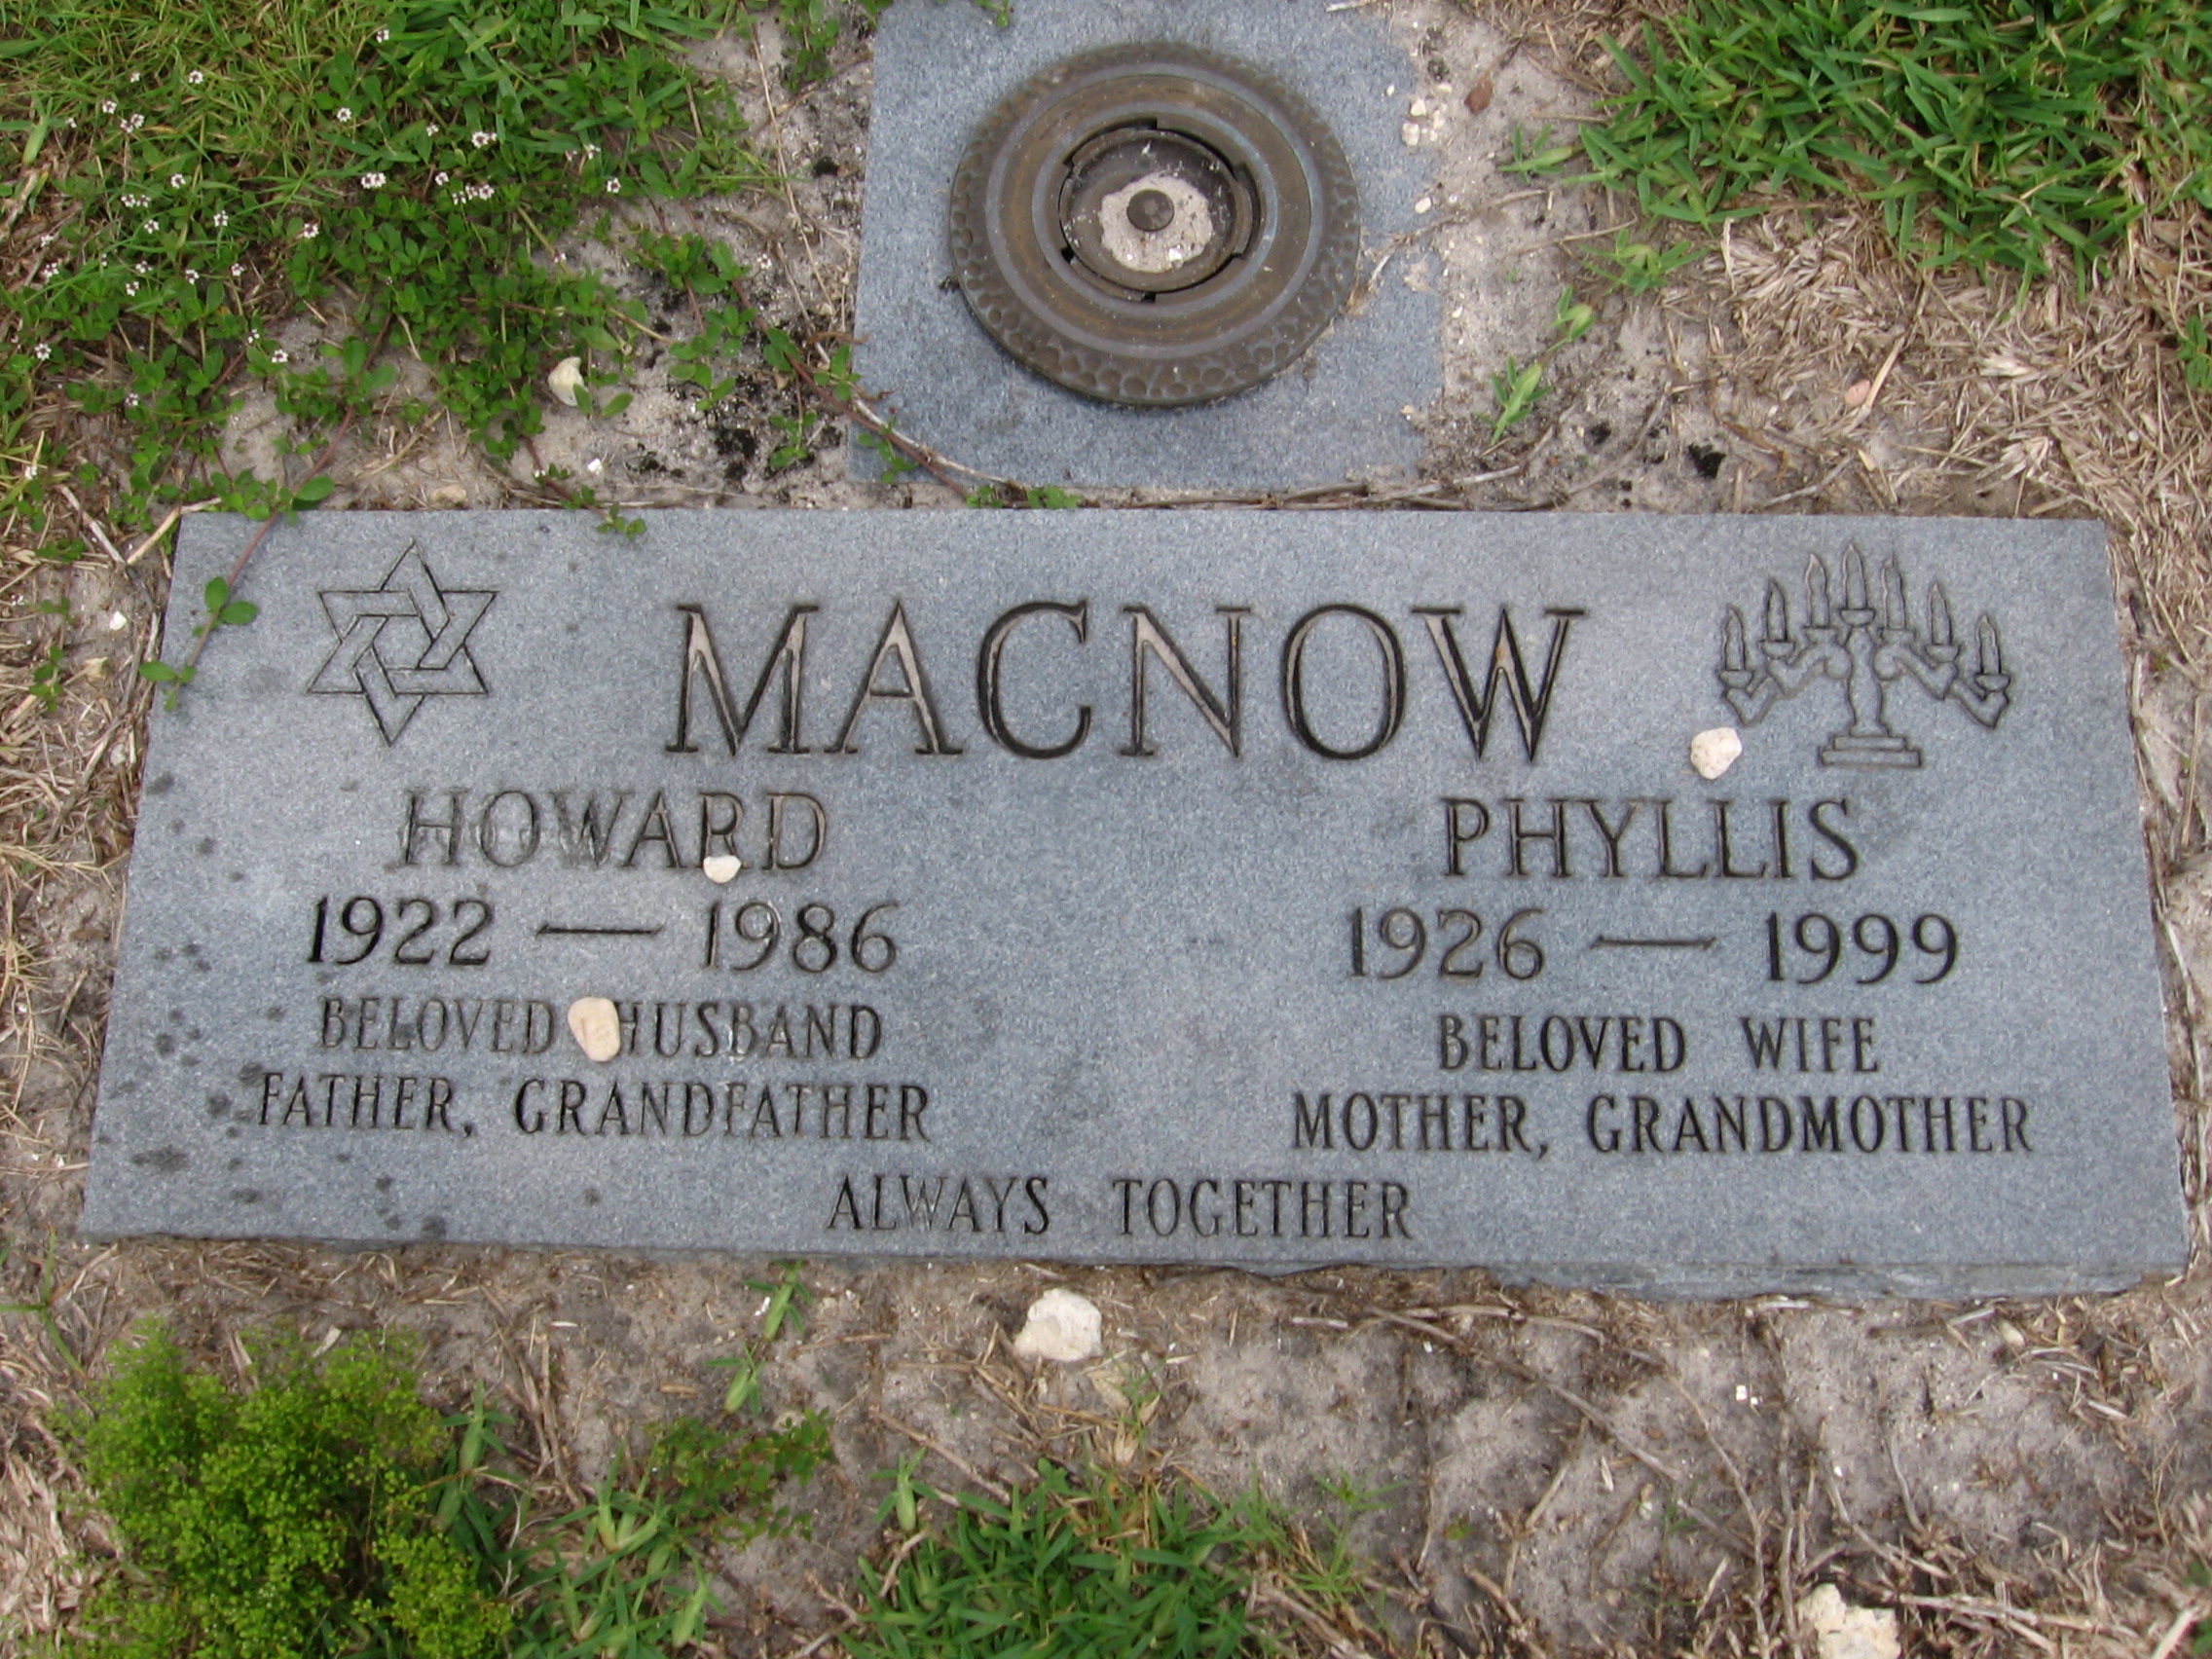 Howard Macnow